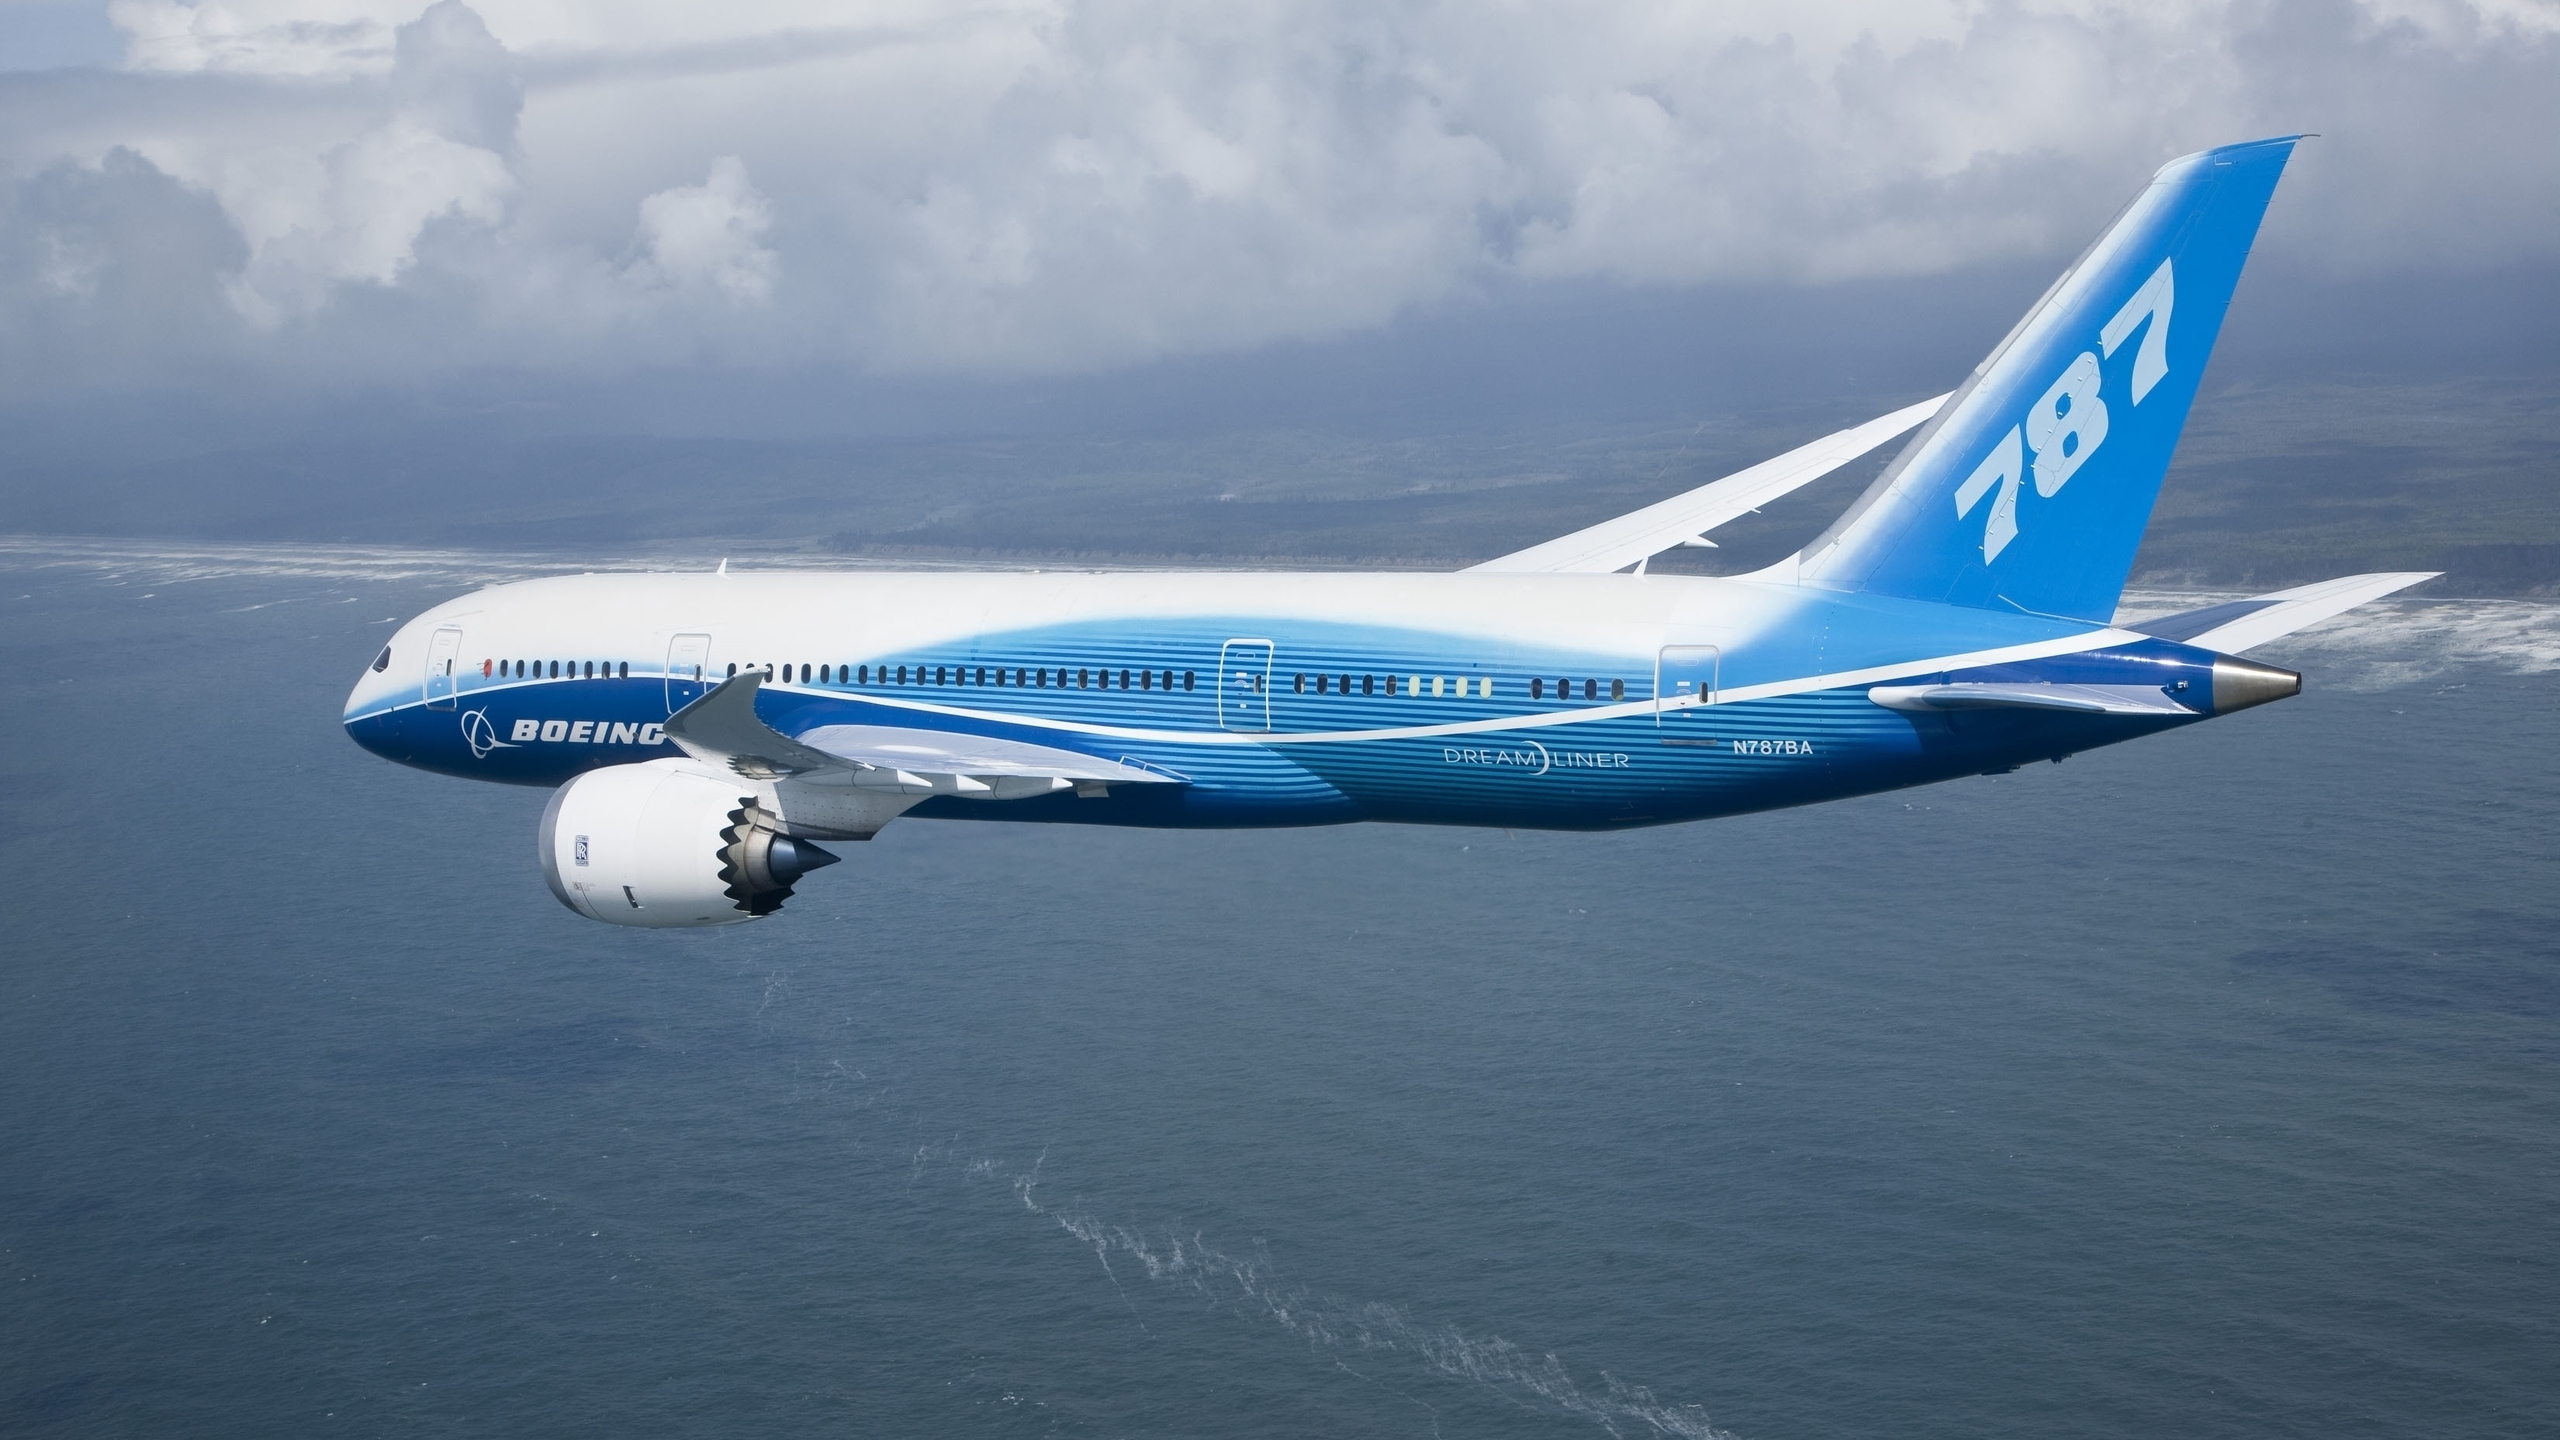 Boeing 787 Flying for 2560x1440 HDTV resolution